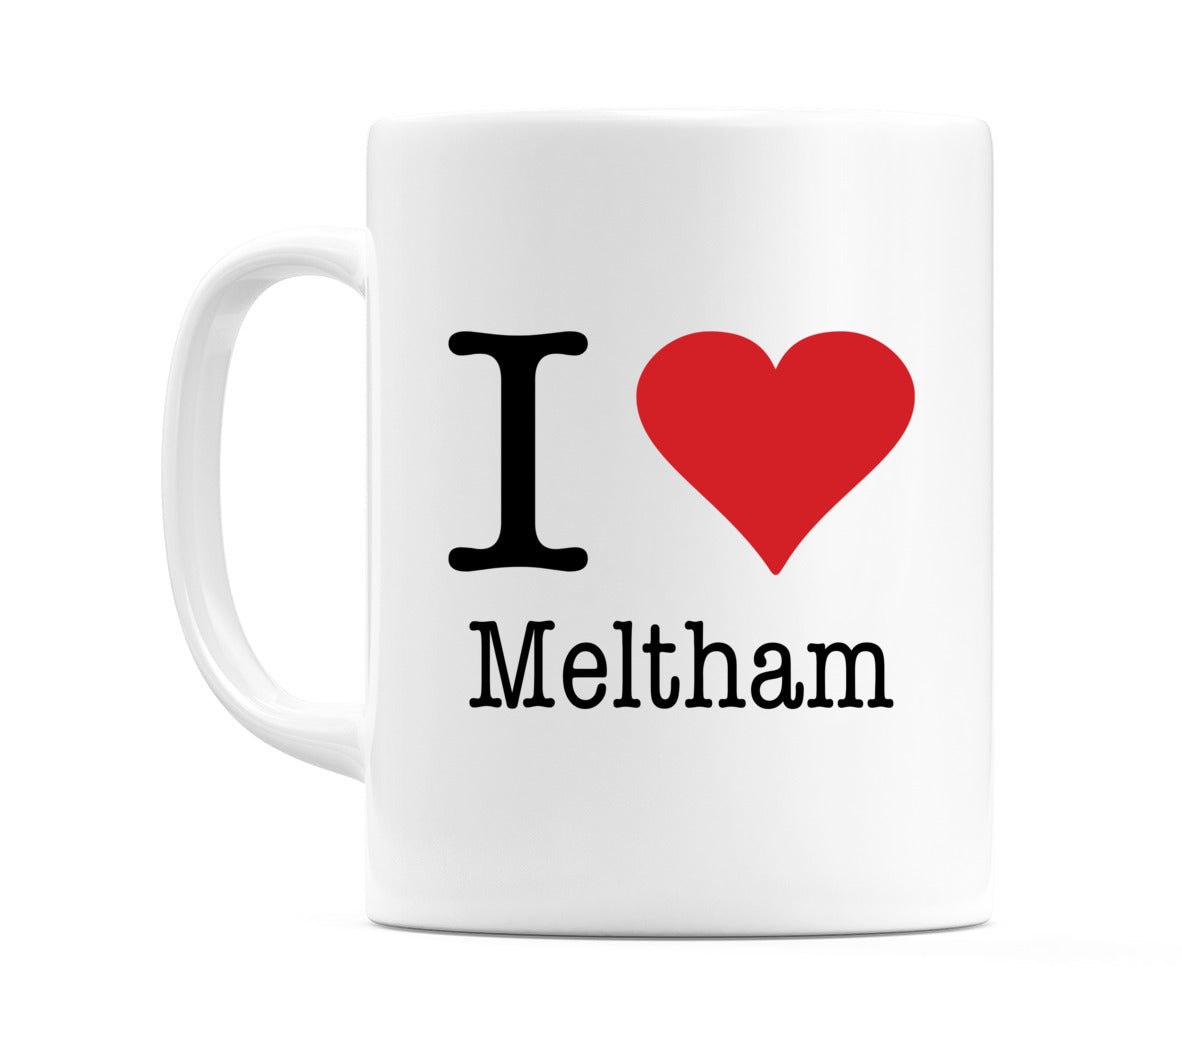 I Love Meltham Mug